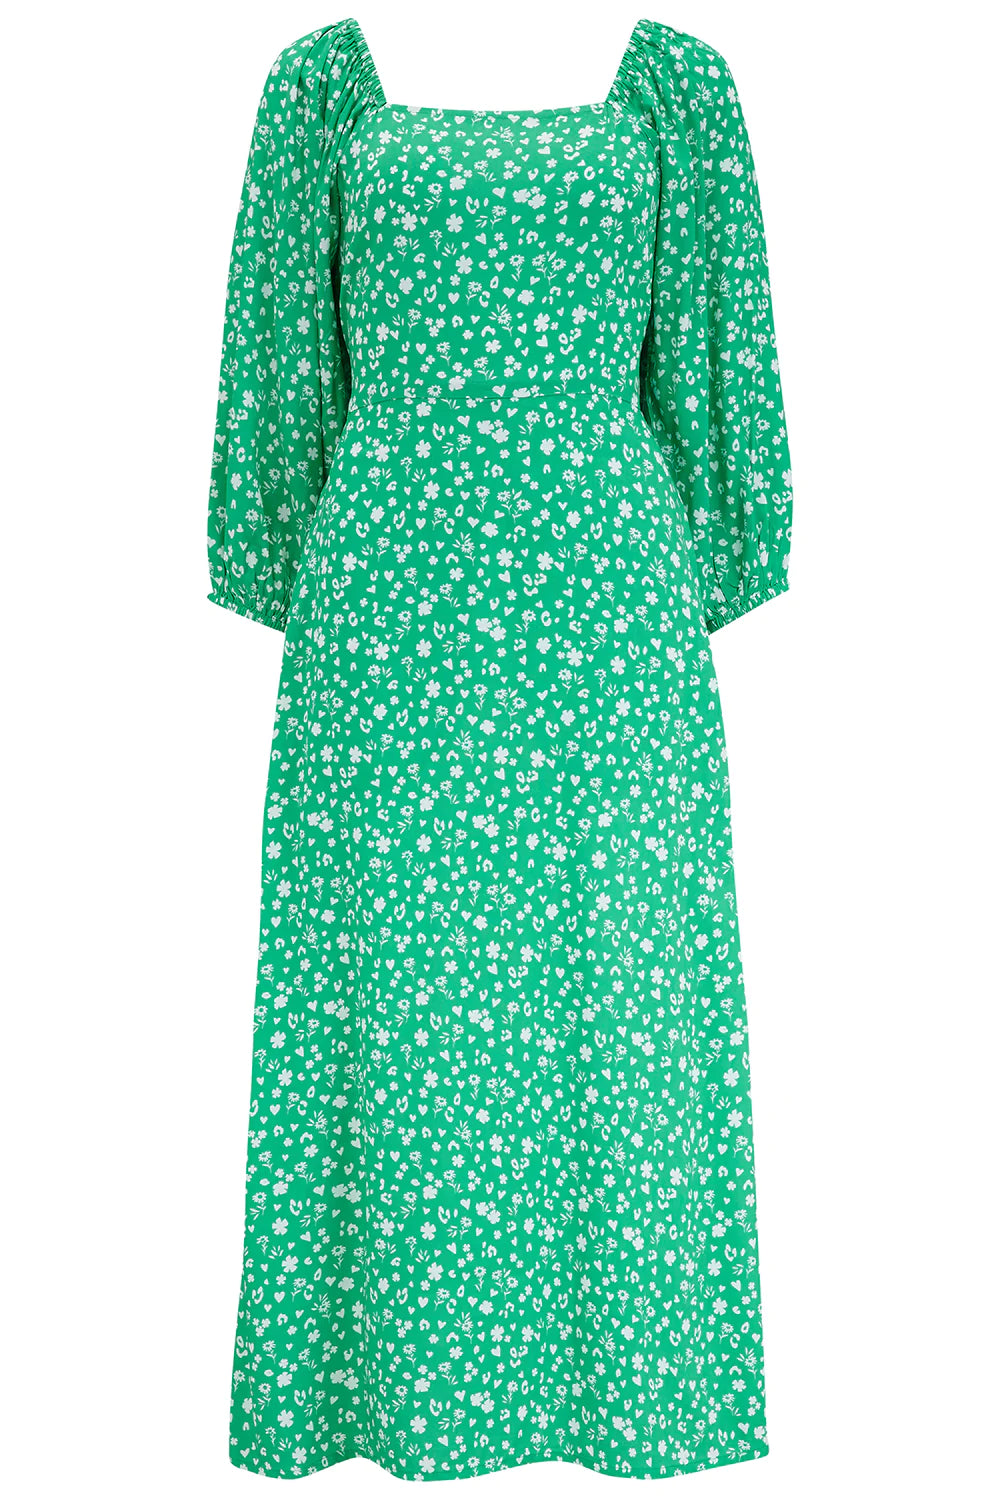 Sugarhill Brighton Catherine Shirred Midi Dress - Green, Scatter Print